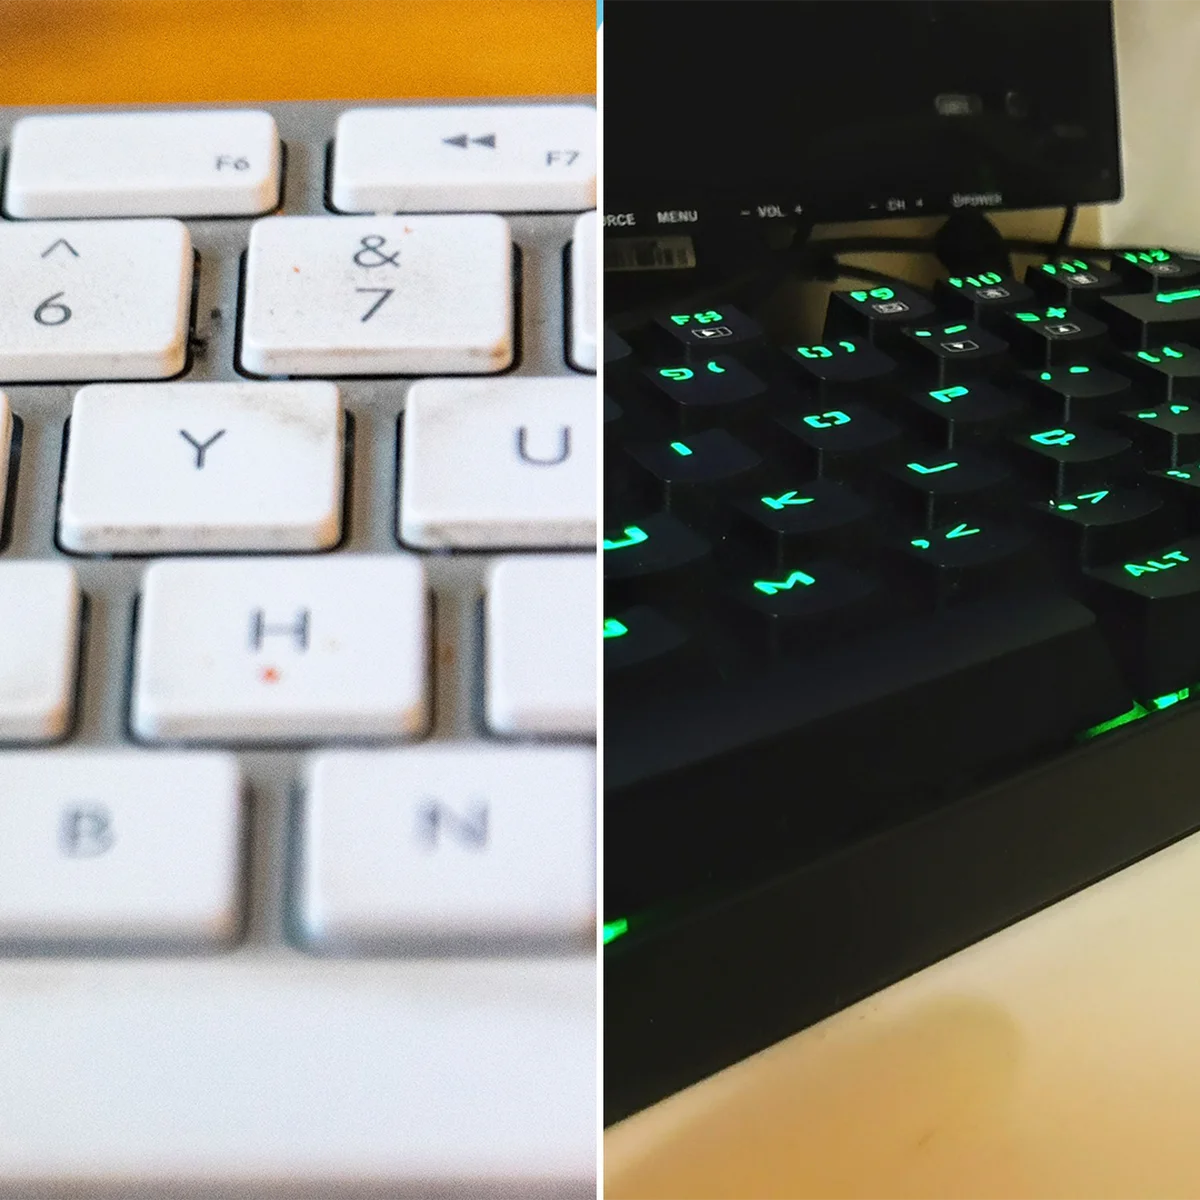 CÓMO LIMPIAR TECLADO ORDENADOR  Esta es la manera más eficiente de limpiar  el teclado de tu ordenador: evitarás dañar las teclas